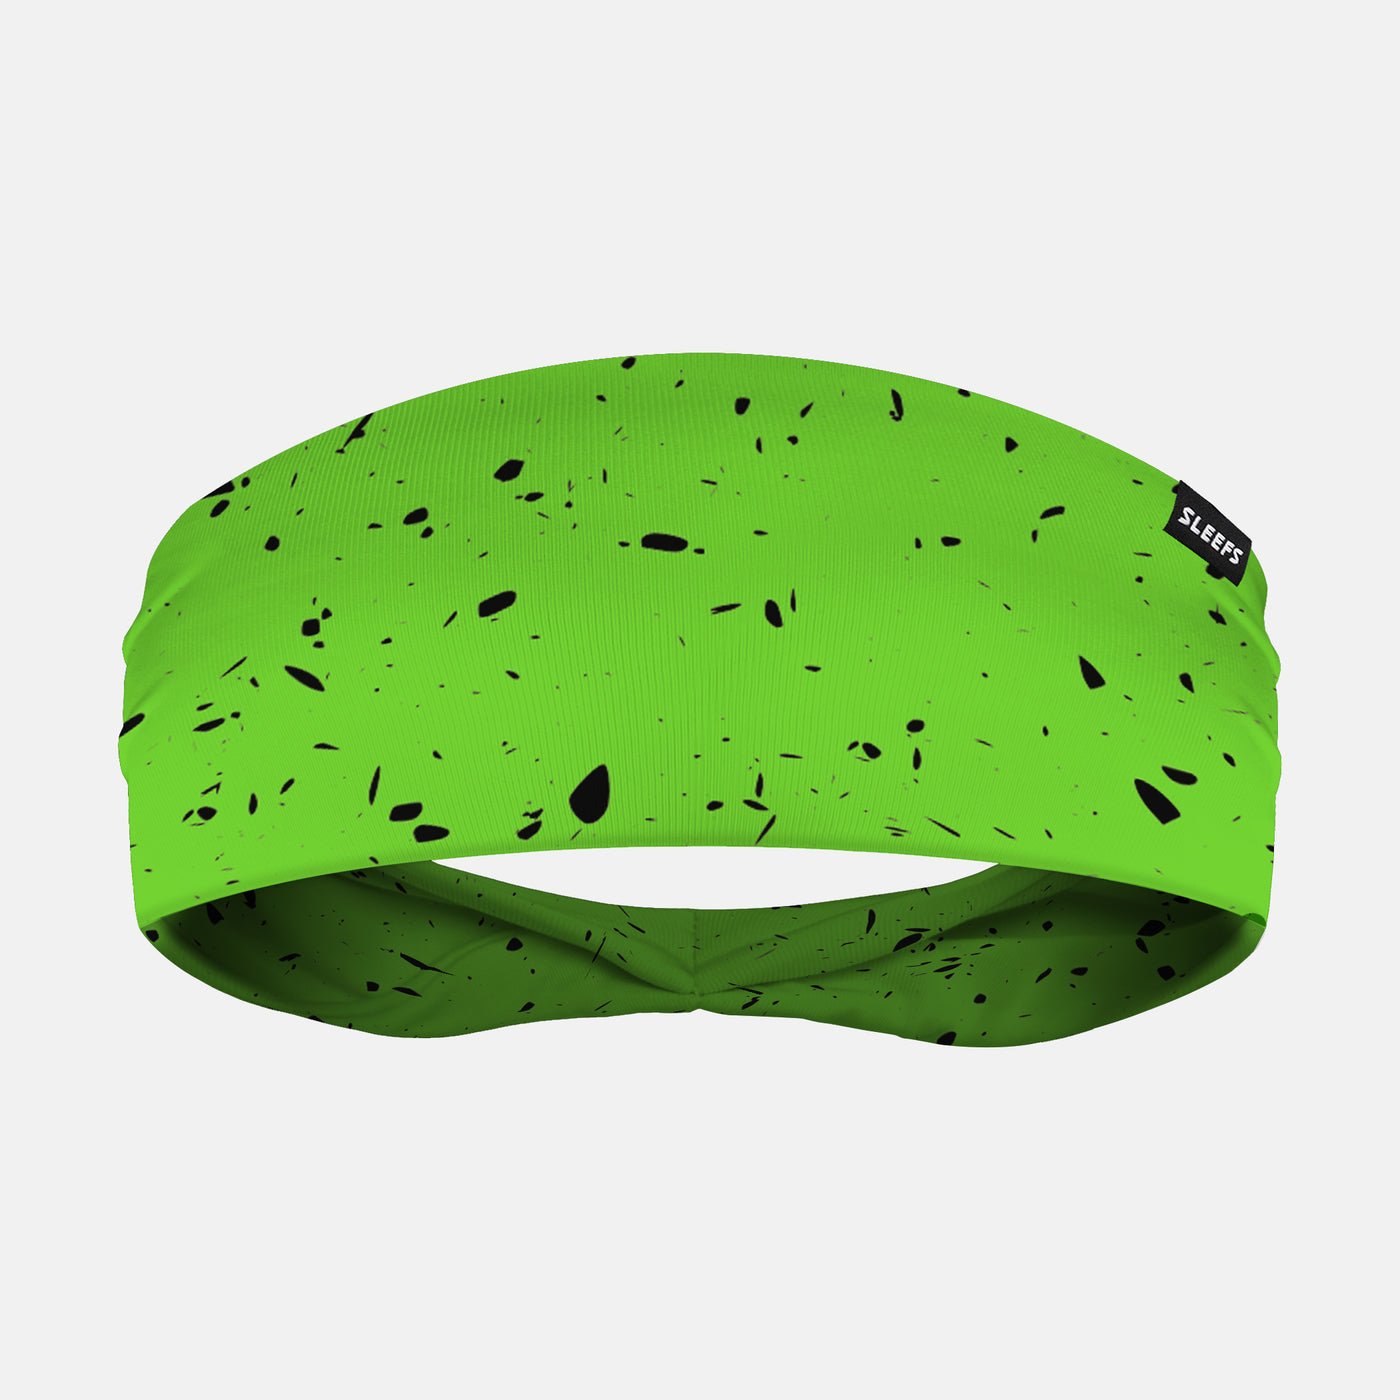 Concrete Lizard Green Headband